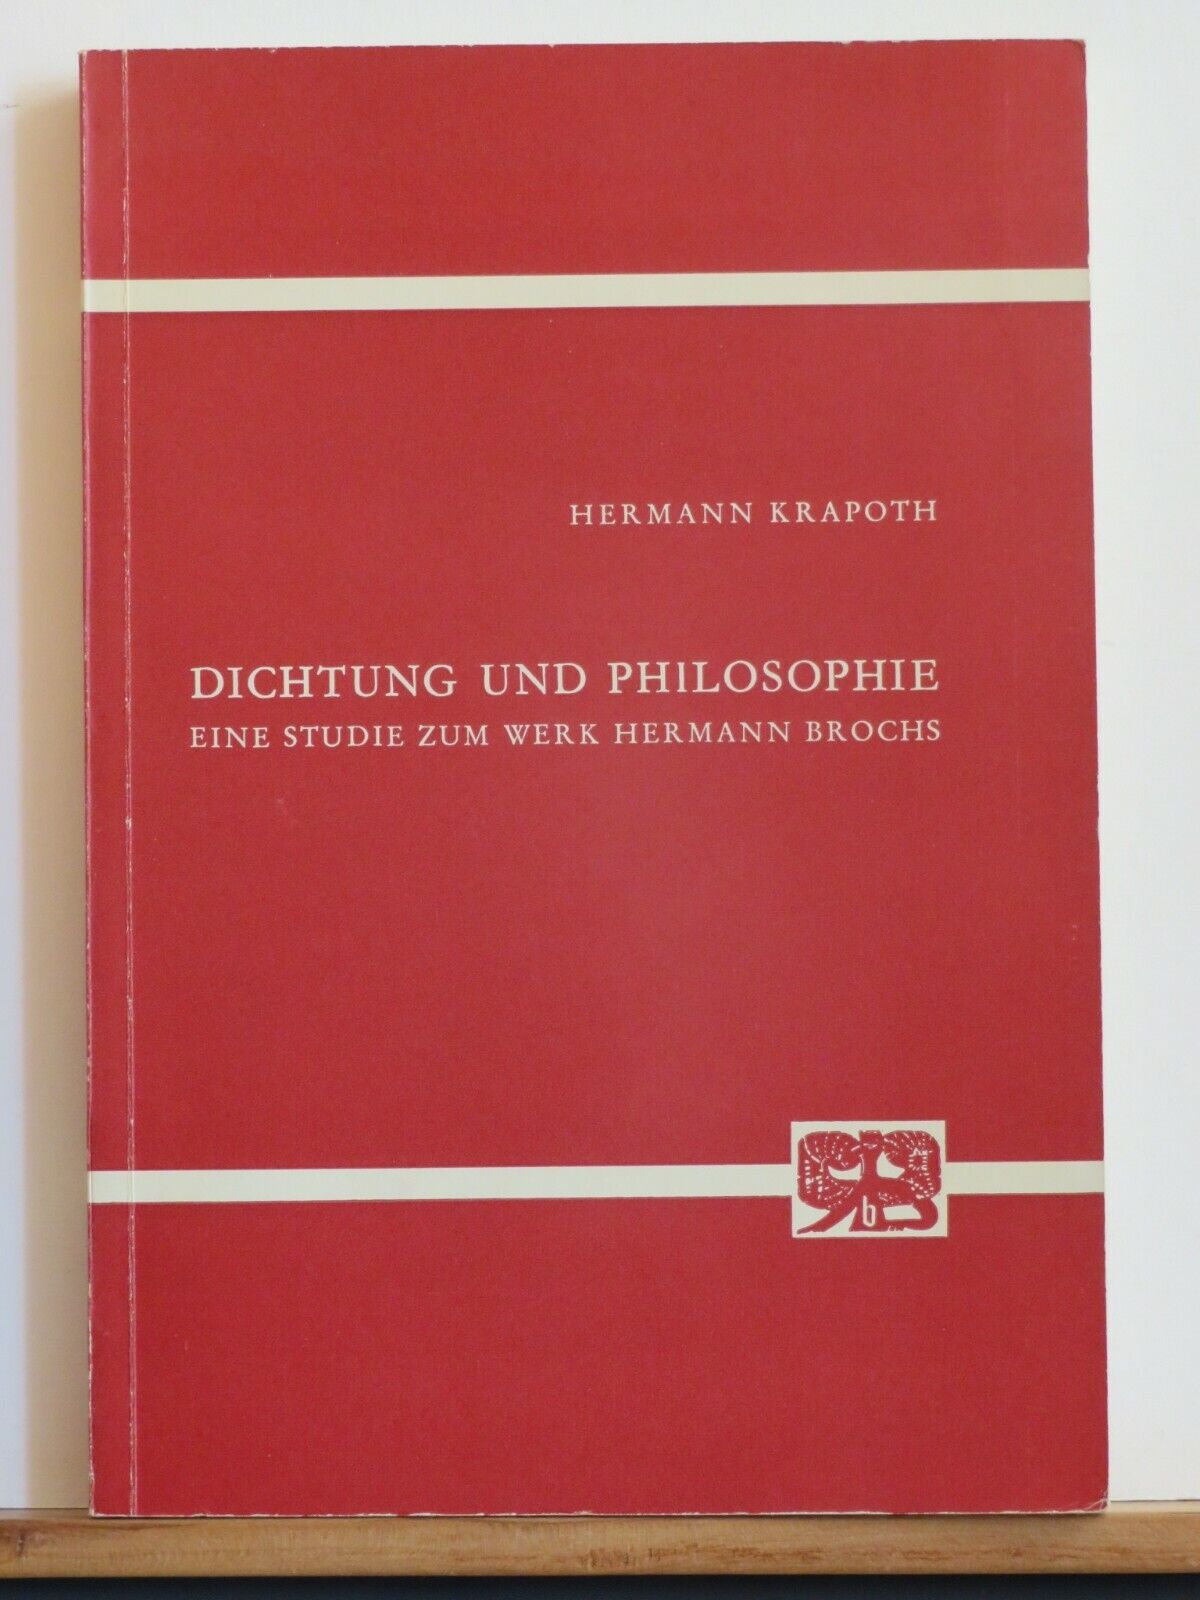 Hermann Krapoth: Dichtung und Philosophie - Eine Studie zum Werk Hermann Brochs - Hermann Krapoth